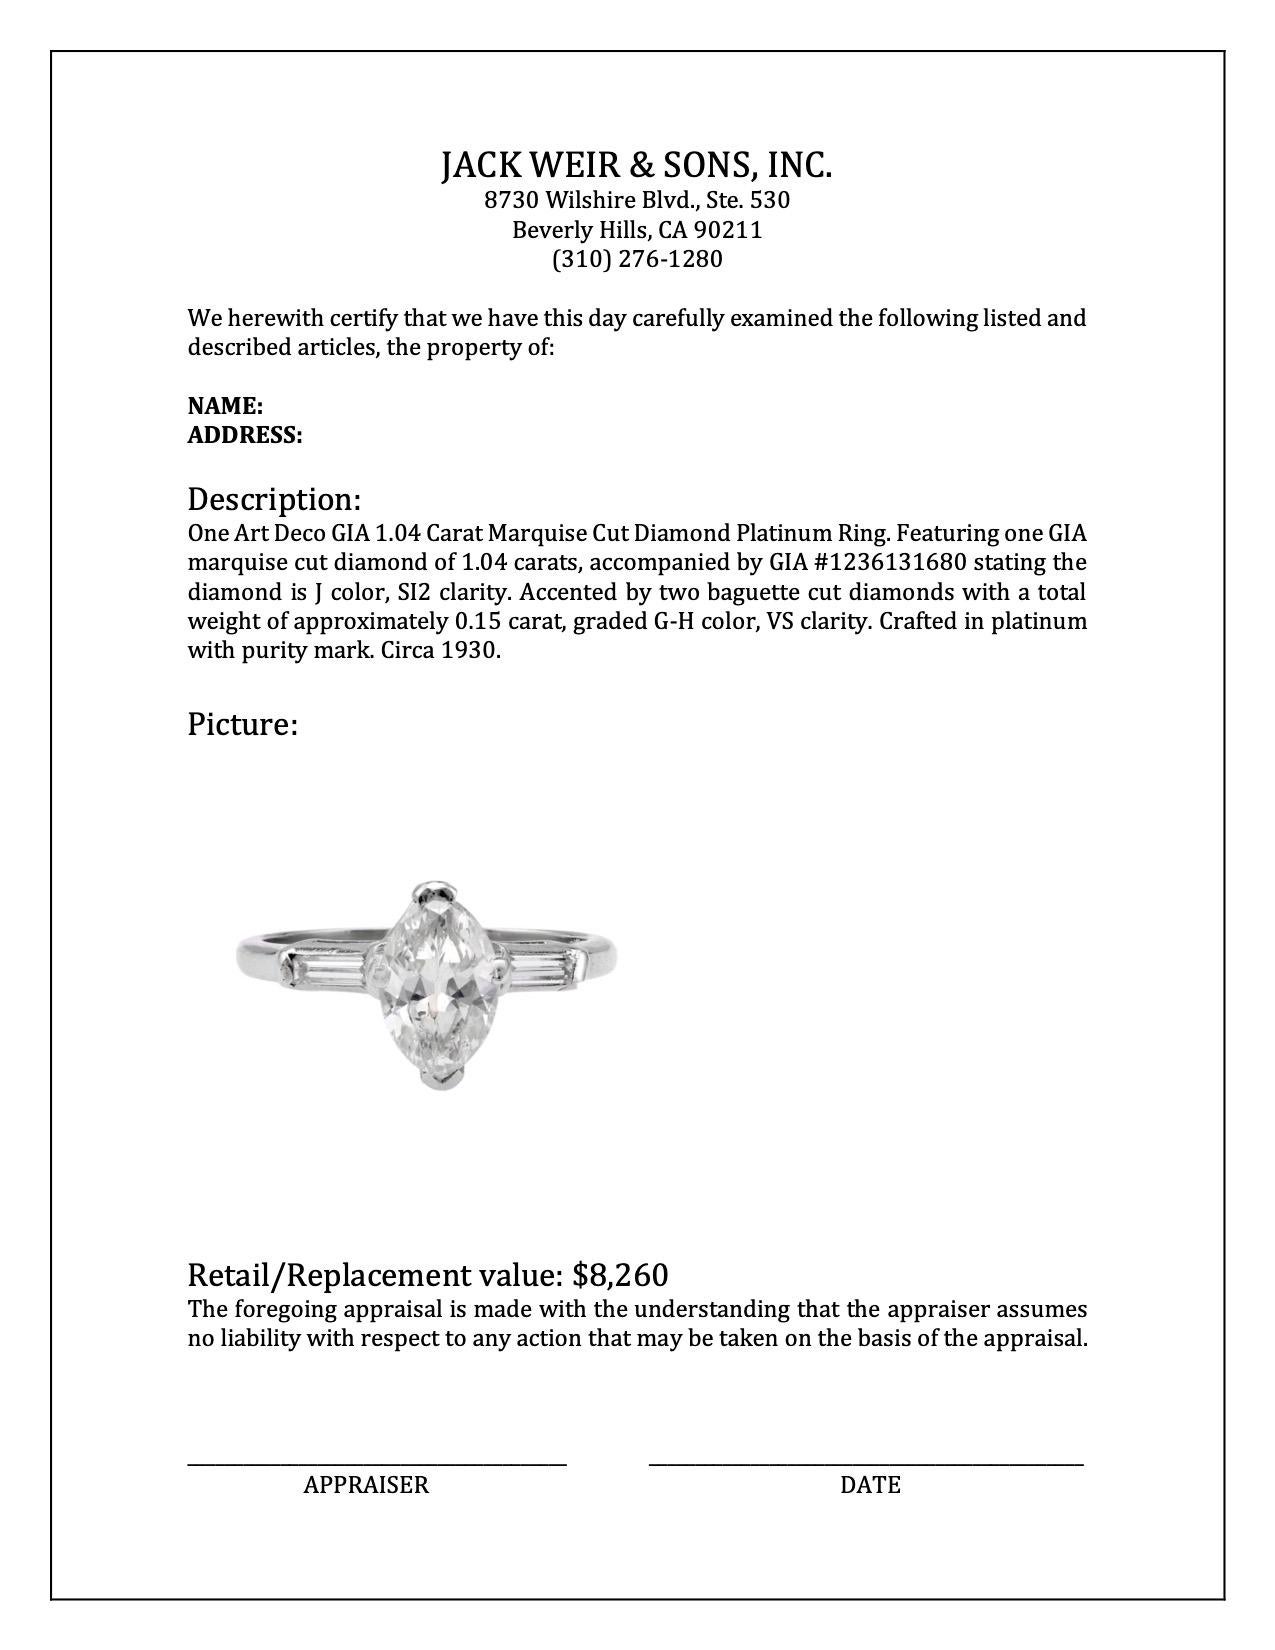 Art Deco GIA 1.04 Carat Marquise Cut Diamond Platinum Ring For Sale 1